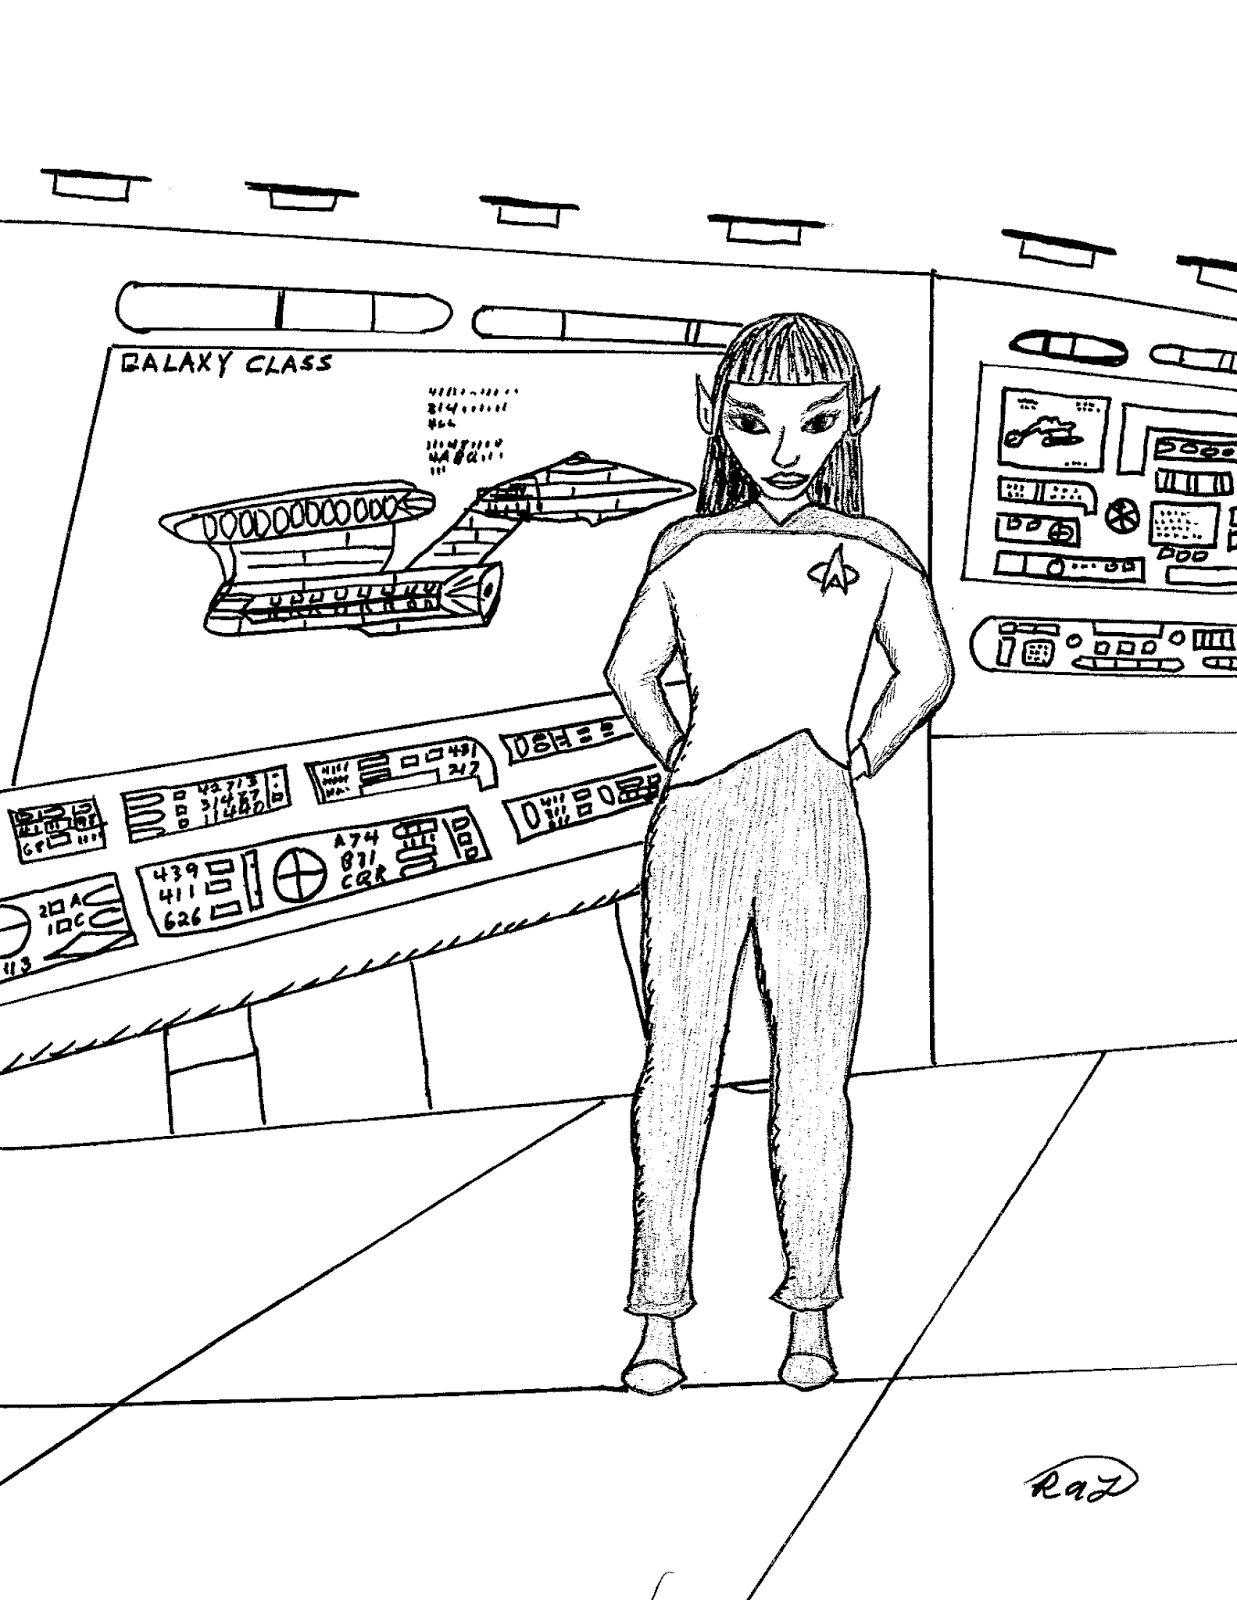 Robin's Great Coloring Pages: Star Trek Vulcan Members of Starfleet